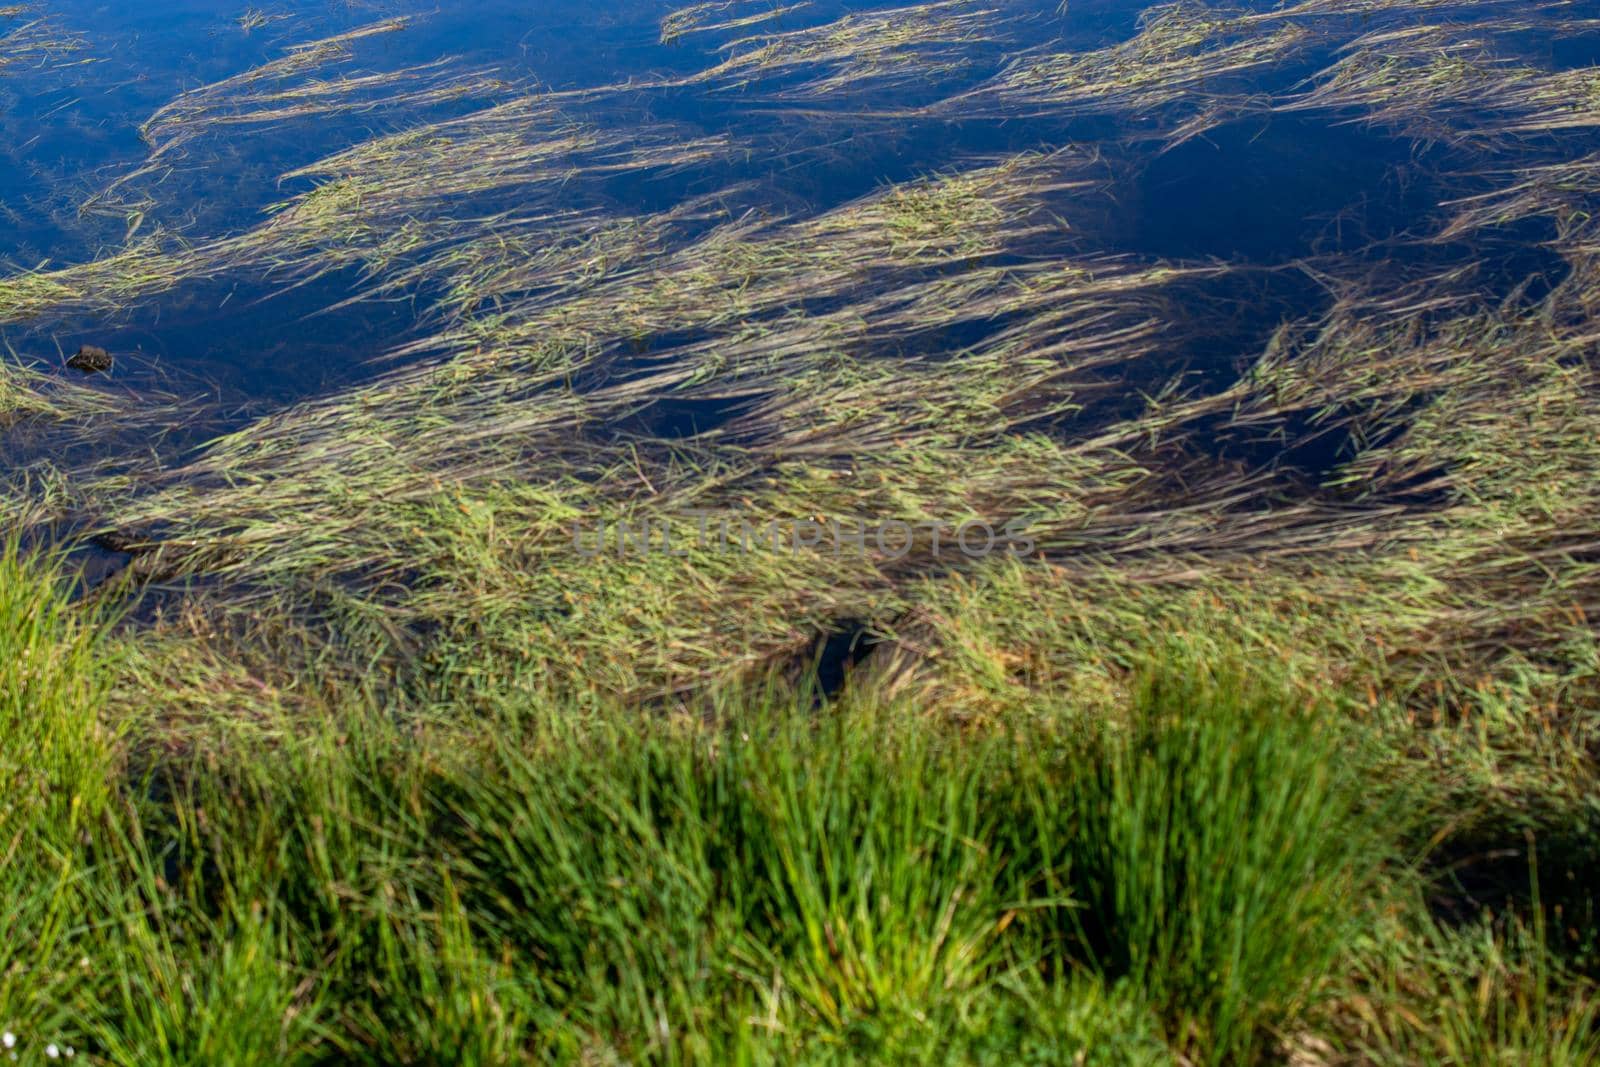 Wild grass by the pond on highland  in Artvin in Turkey